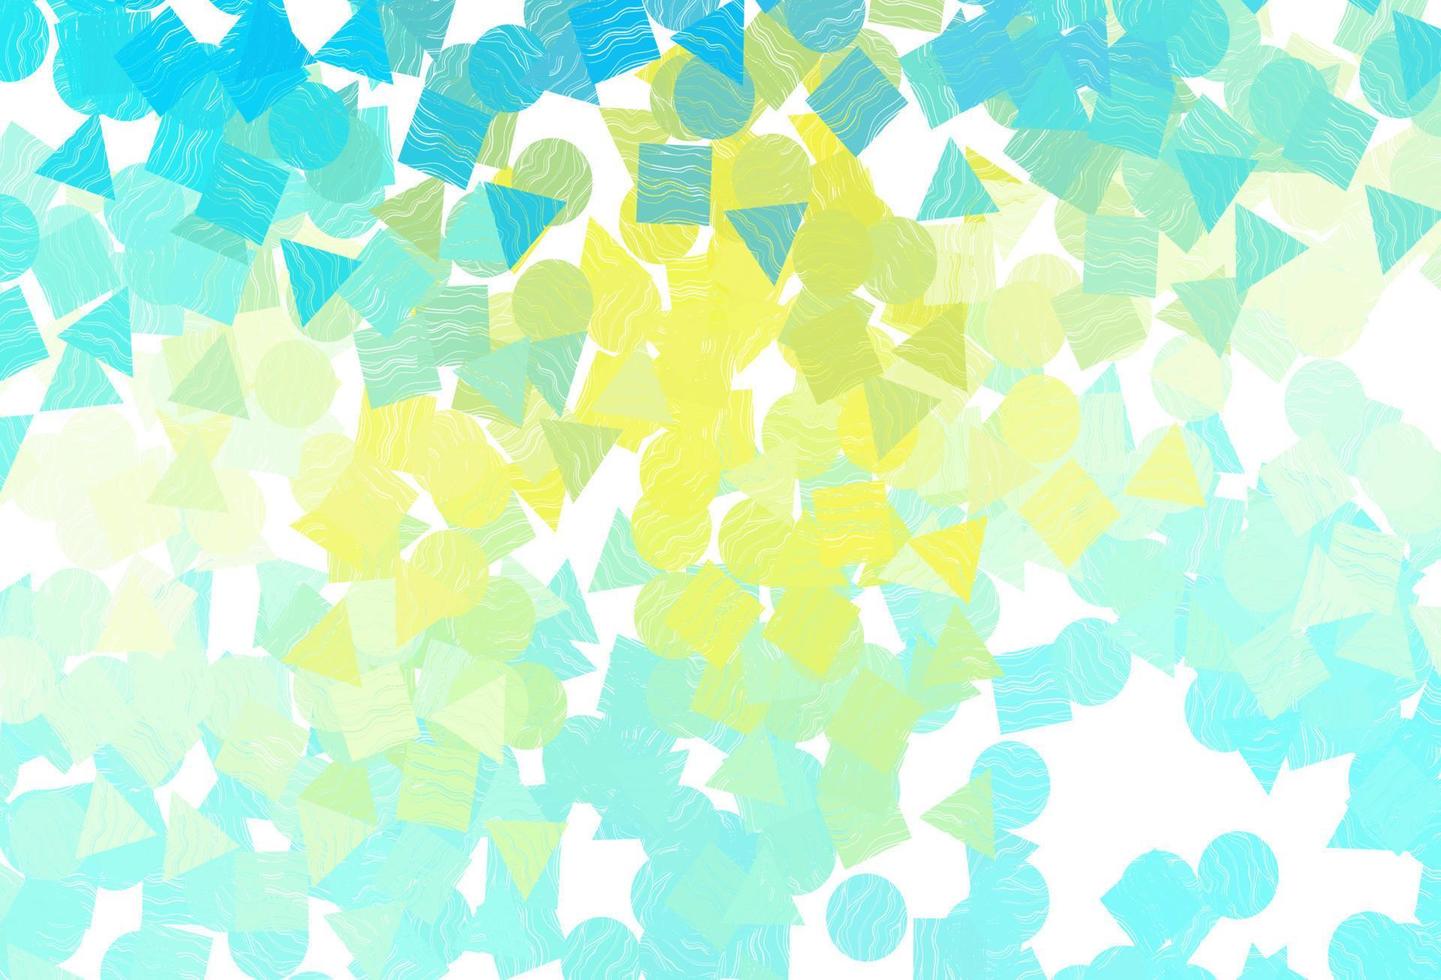 ljus blå, gul vektor layout med cirklar, rader, rektanglar.